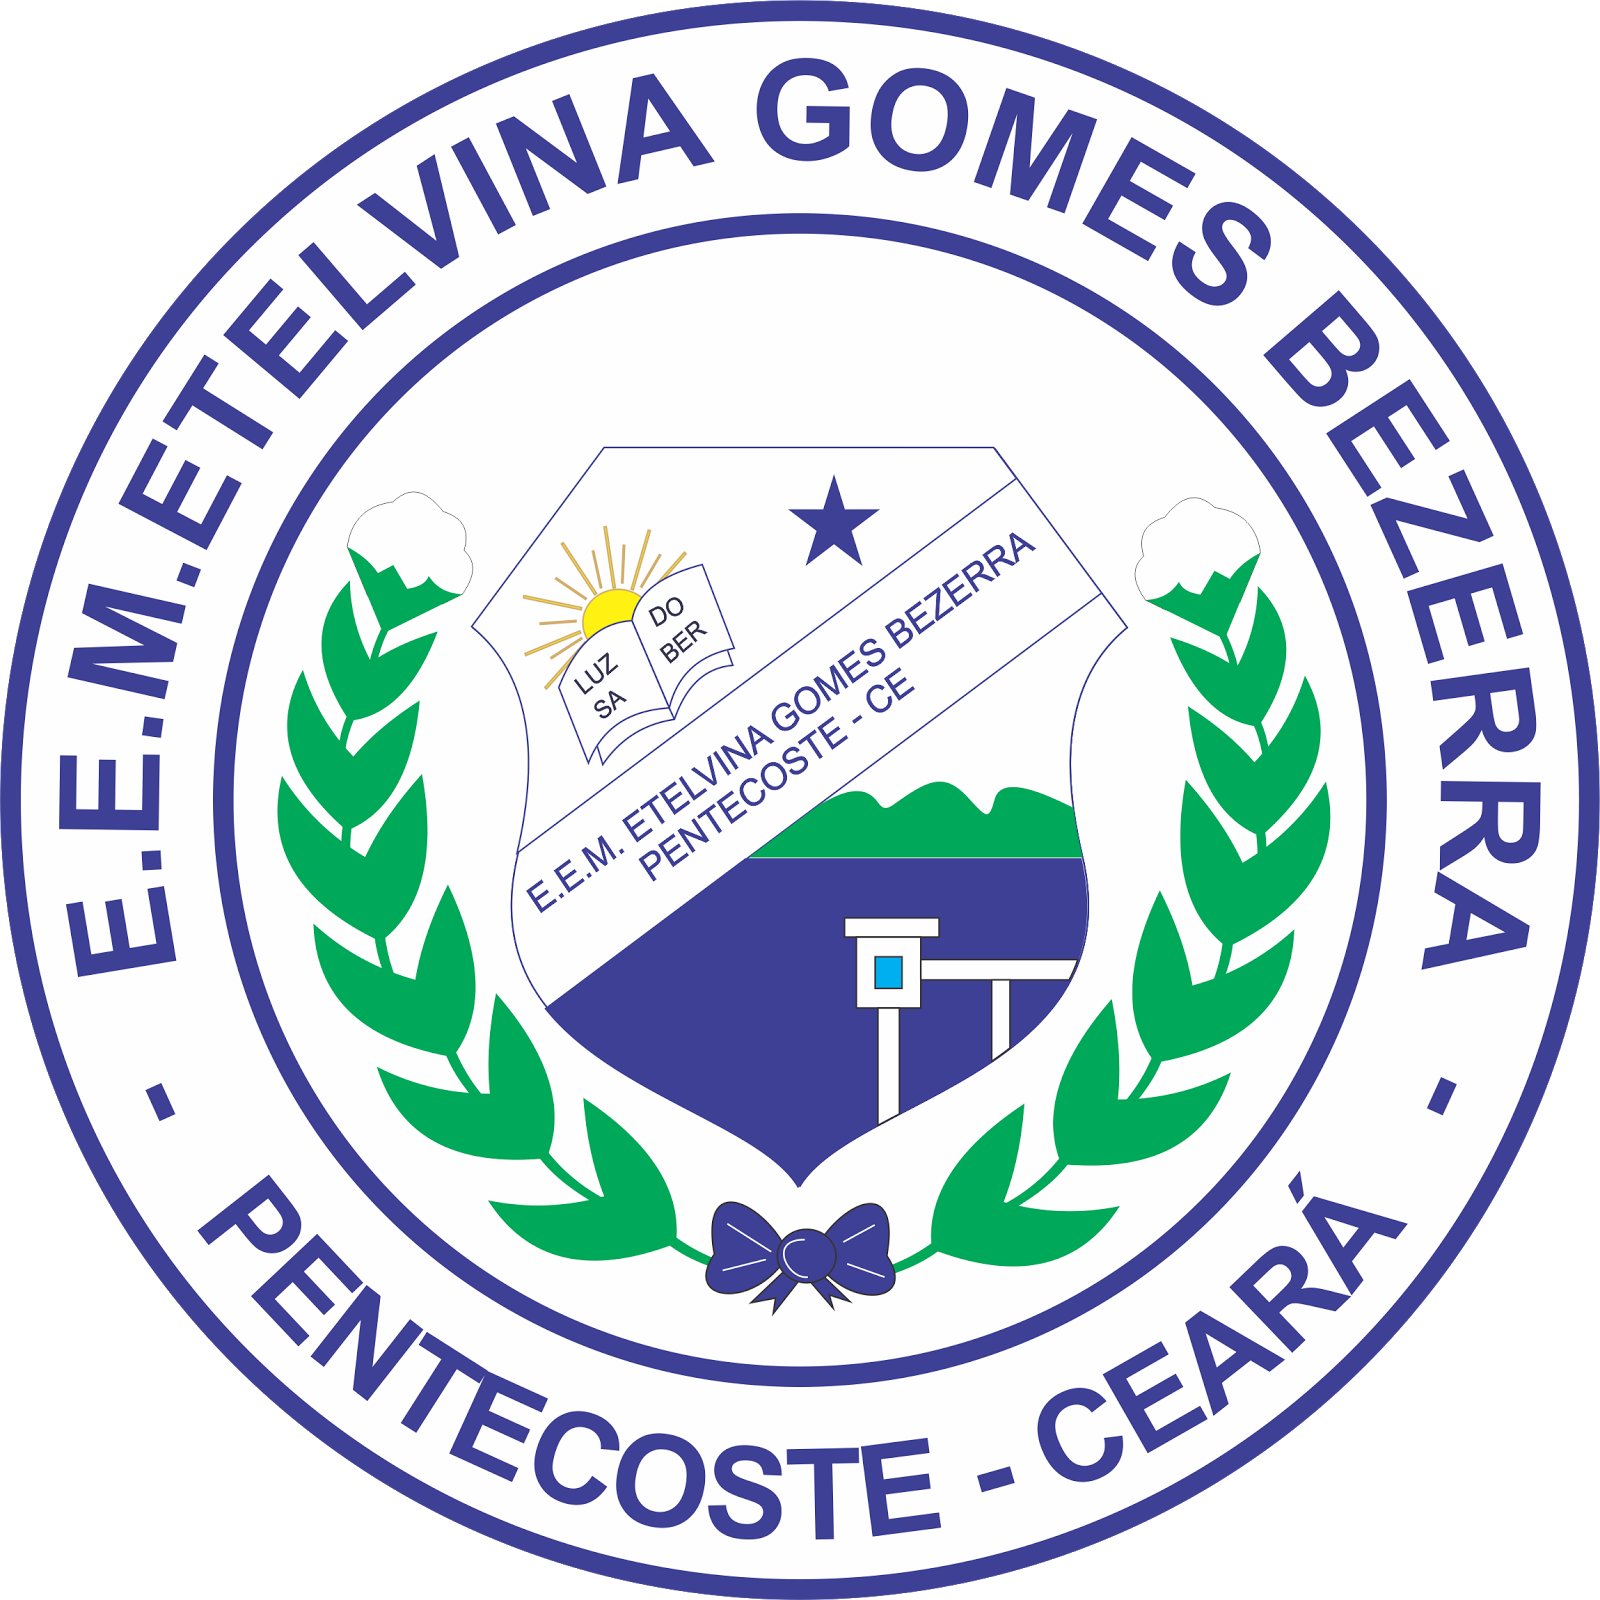 Logotipo da Escola Etelvina Gomes Bezerra